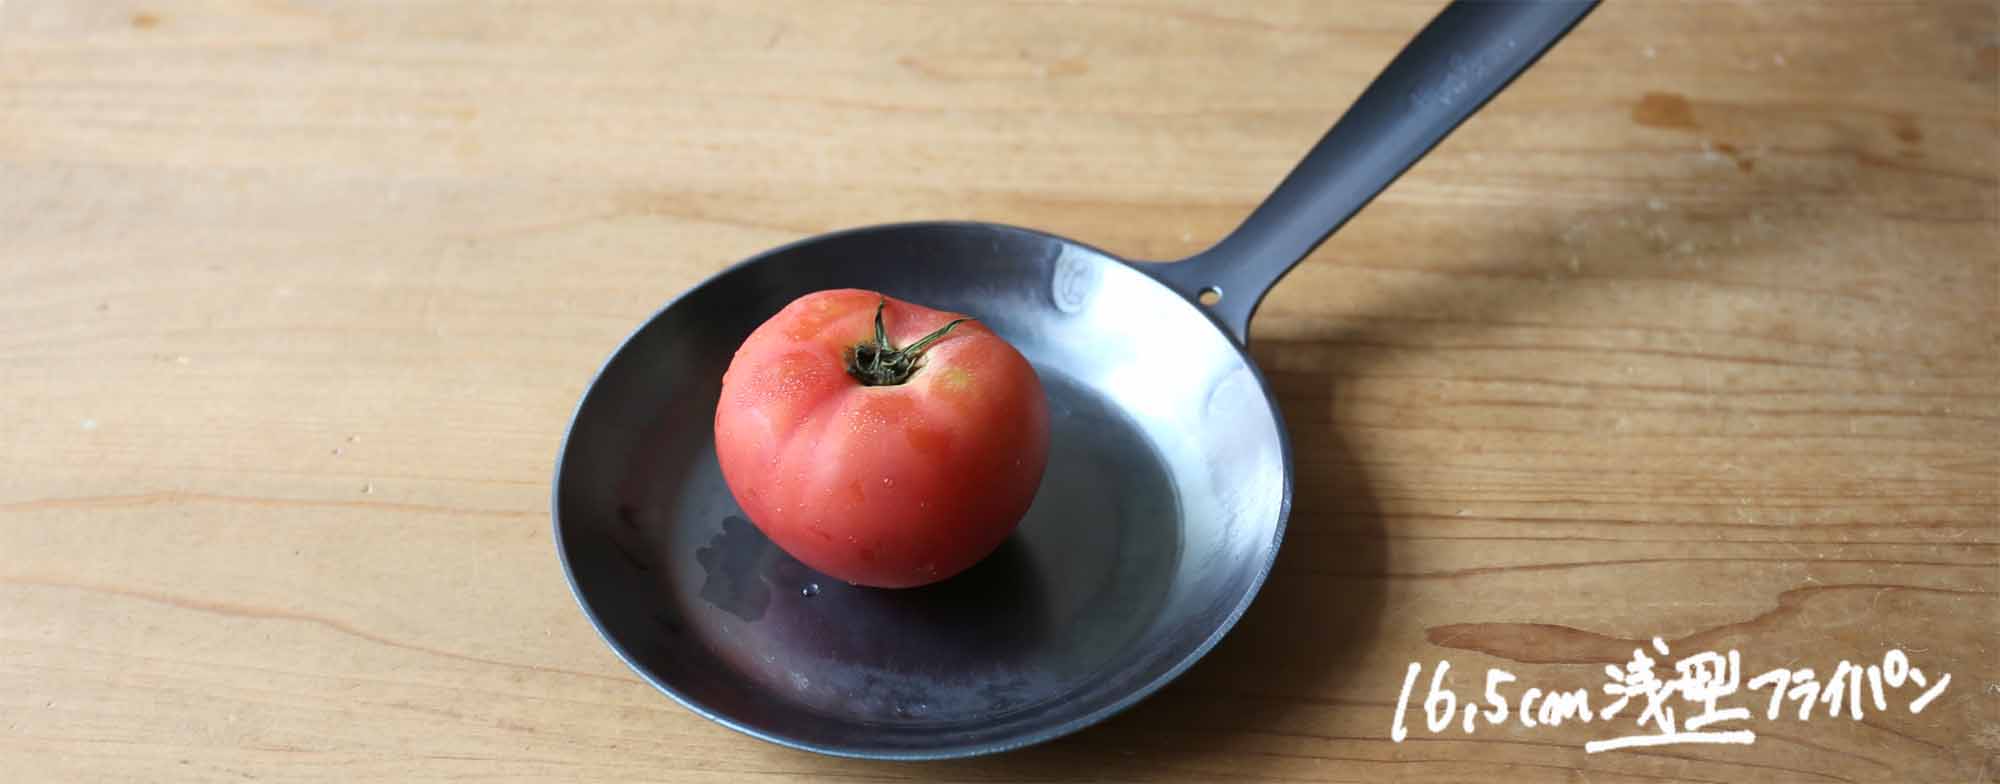 16.5ｃｍの浅型フライパンです。トマトを乗せると丁度こんな感じ。大きさがわかりやすいと思います。